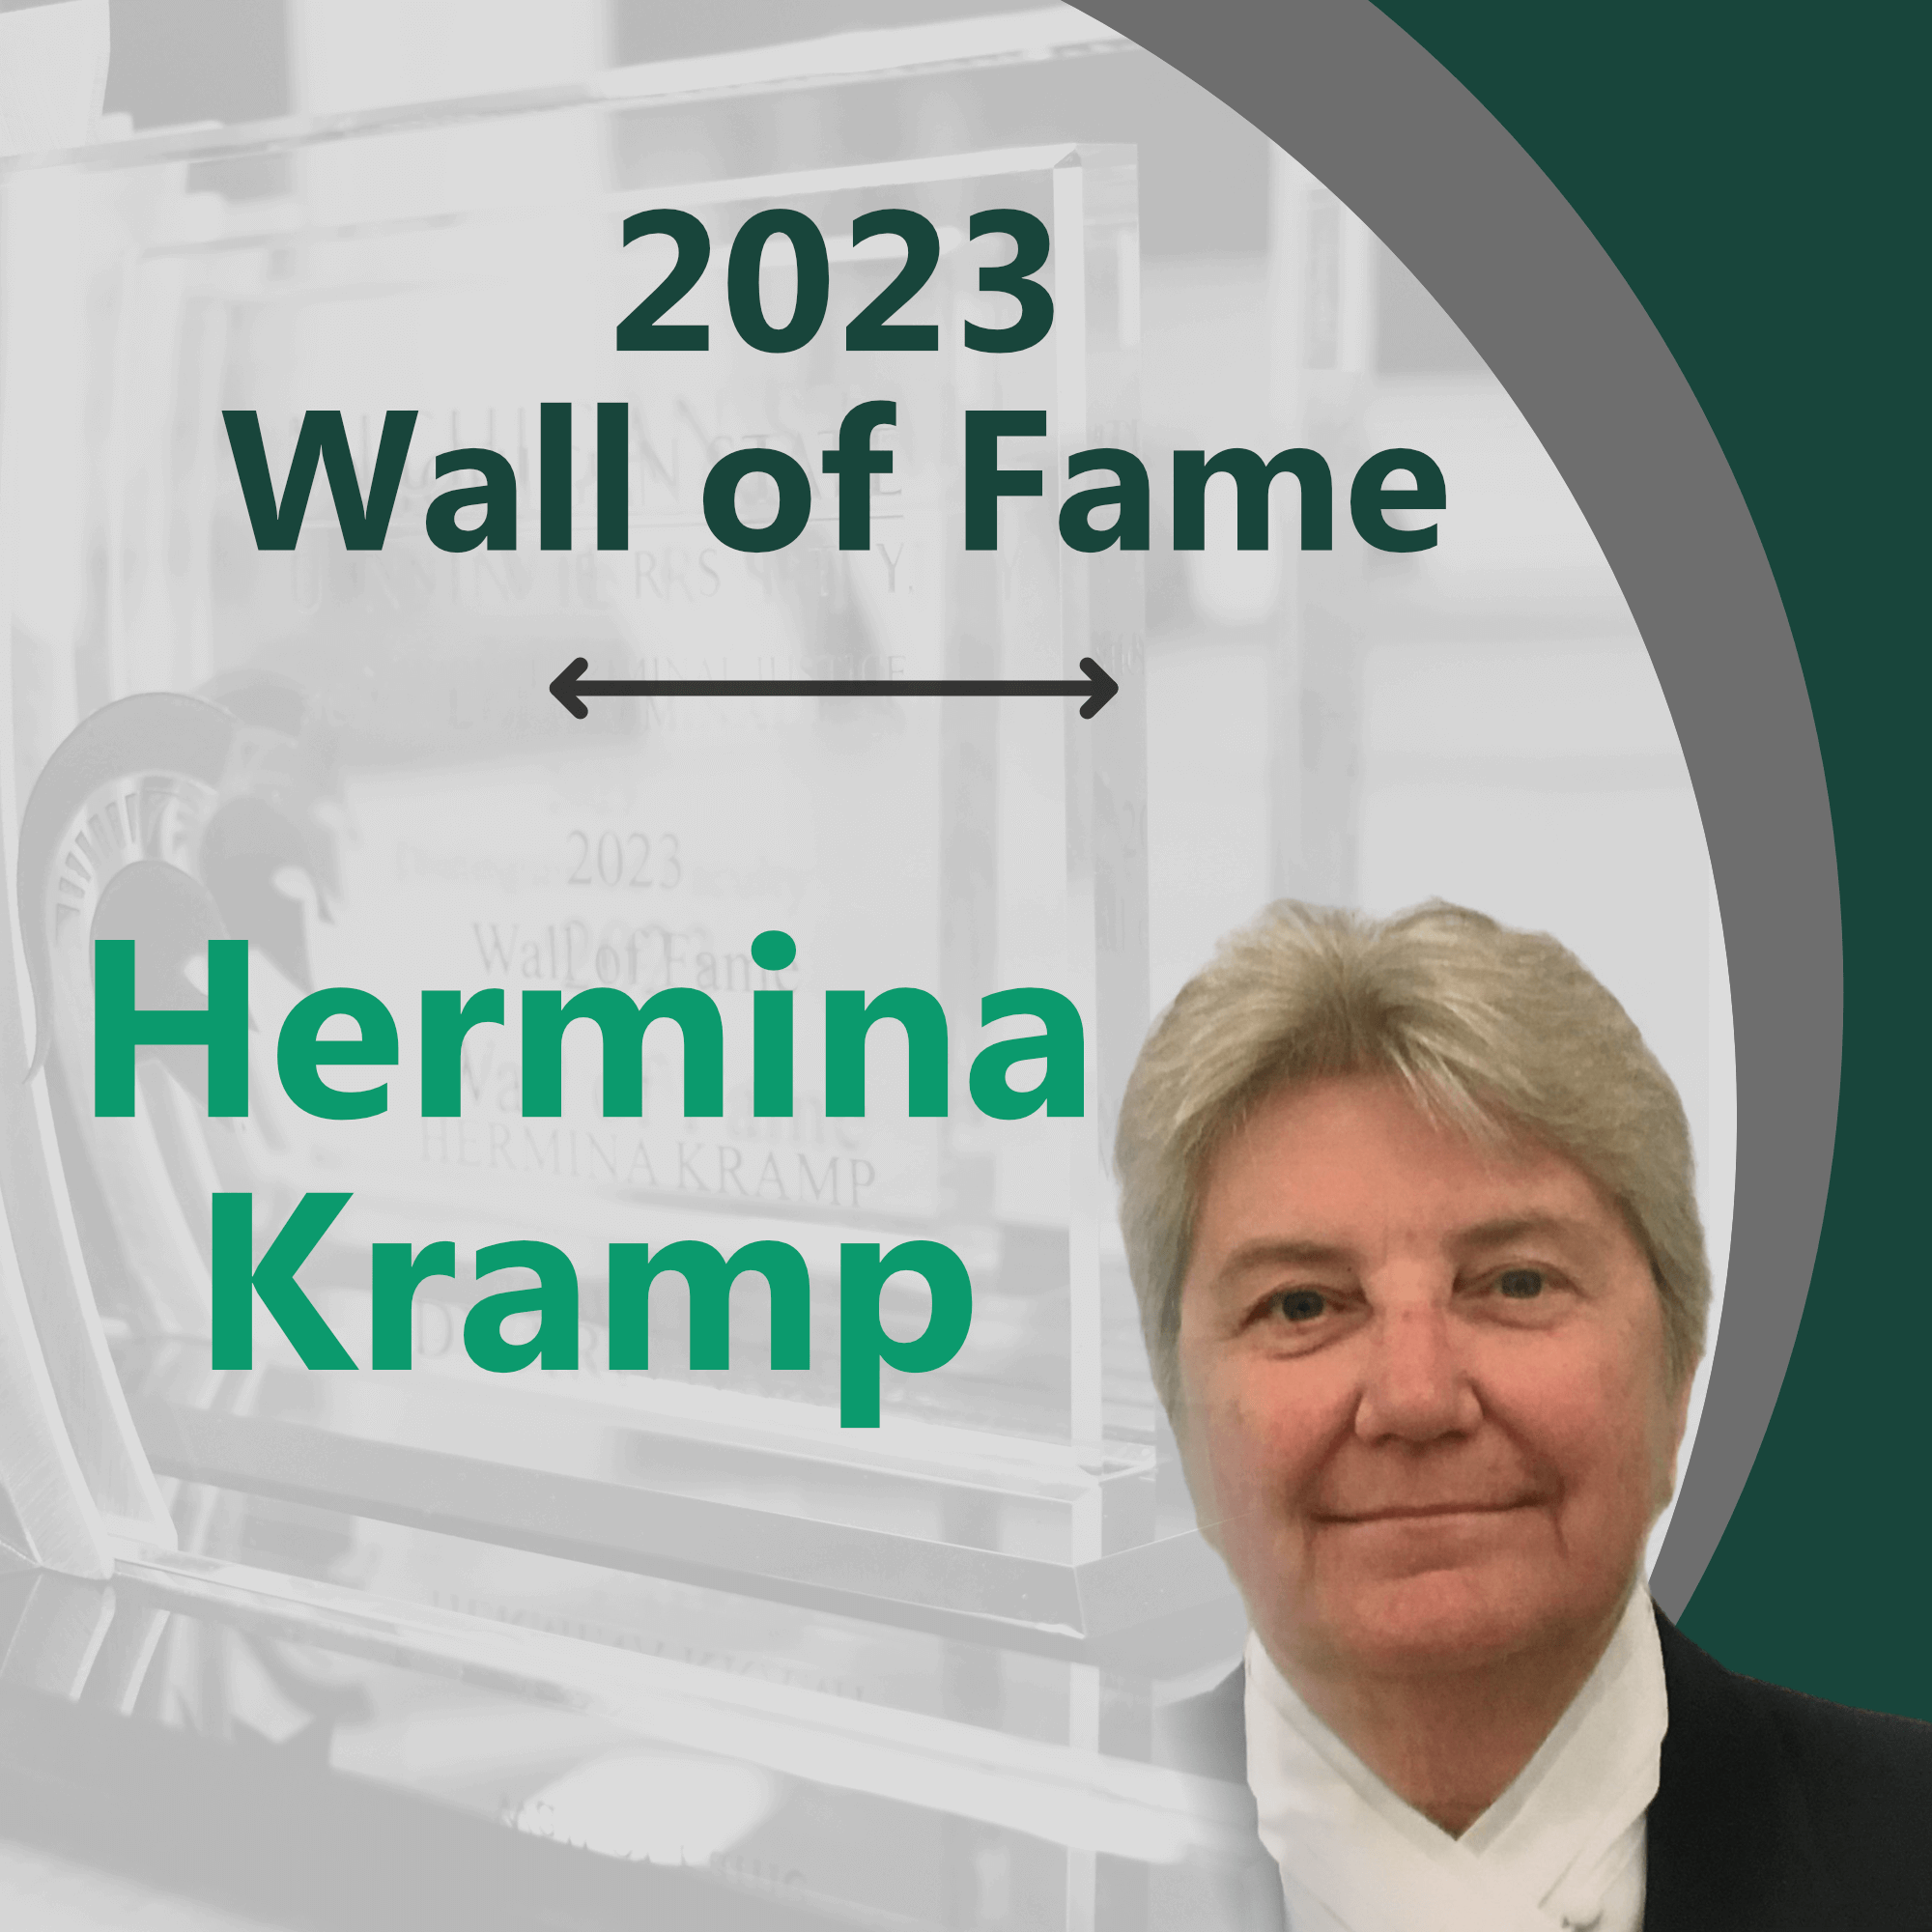 Hermina Kramp: 2023 Wall of Fame Inductee